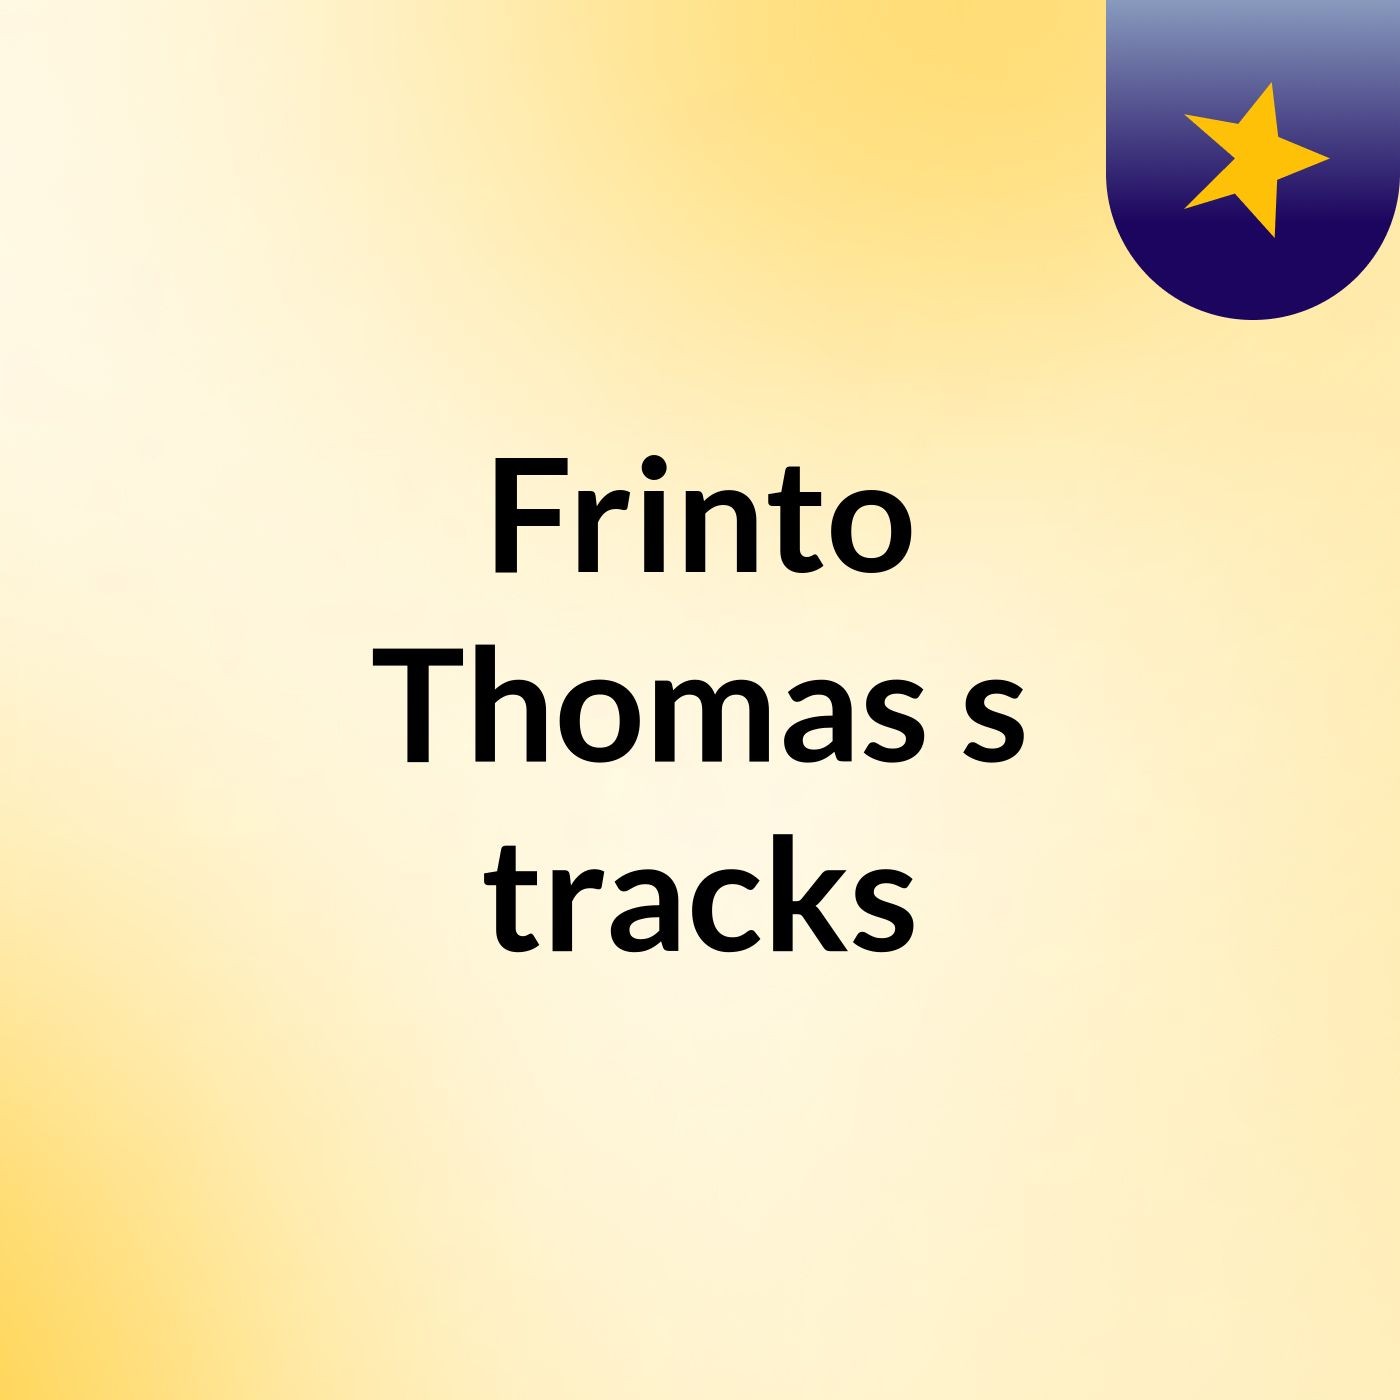 Frinto Thomas's tracks